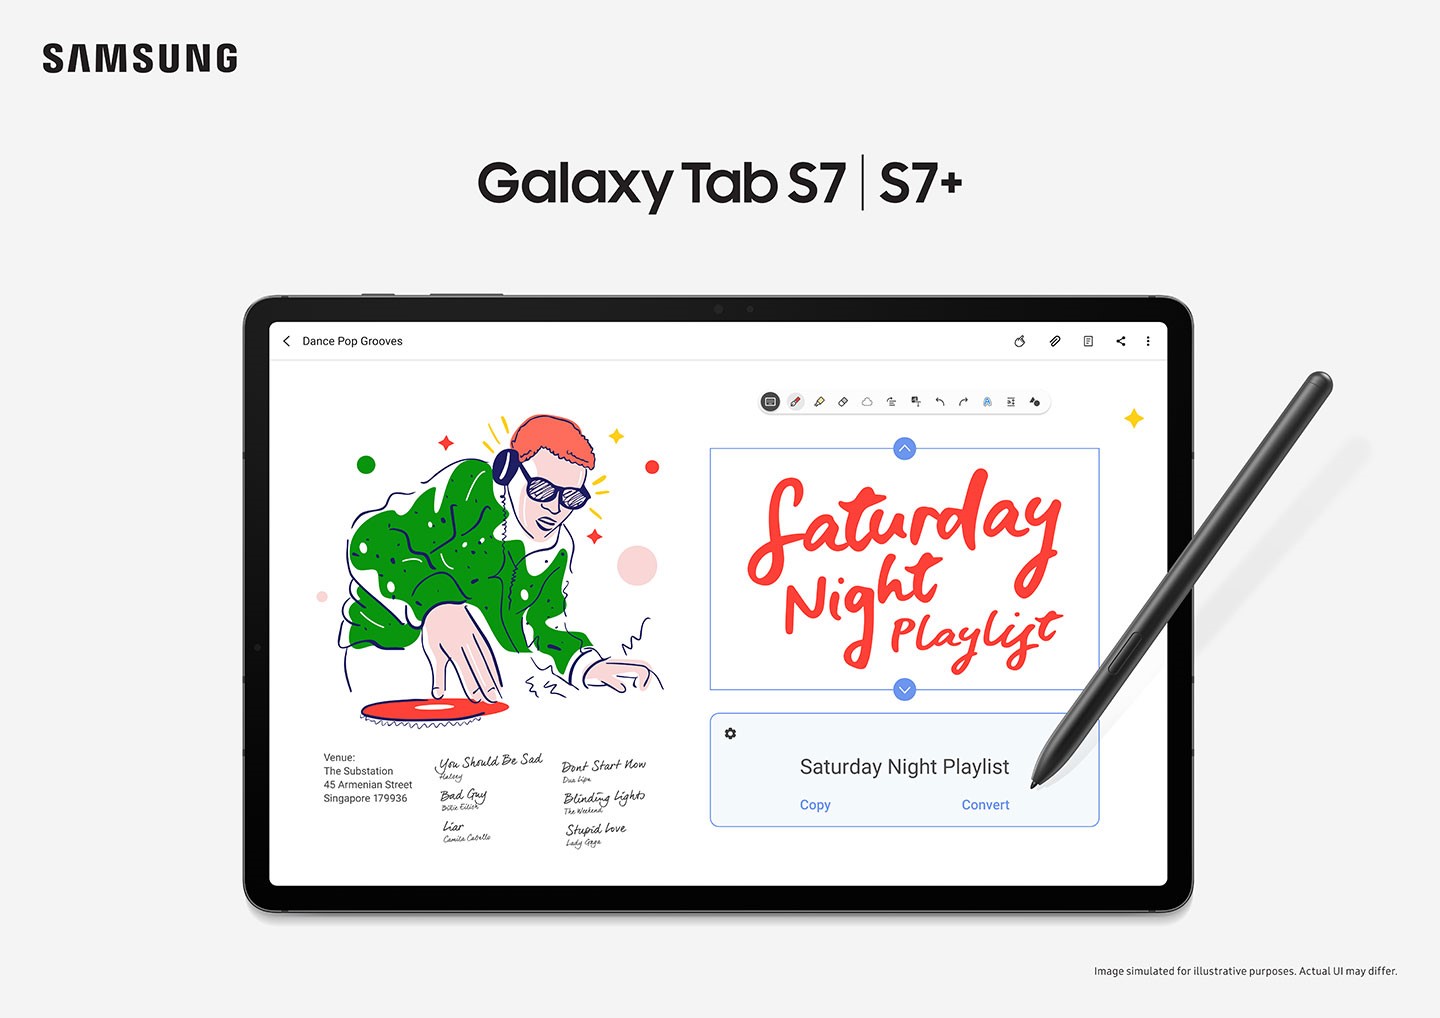 早在 Galaxy Tab S2 推出時就已支援 S Pen，而 Galaxy Tab S3 之後的機種 S Pen 甚至被列入標配（上圖與三星 Galaxy Tab S7+，圖片來源：Samsung Mobile Press）